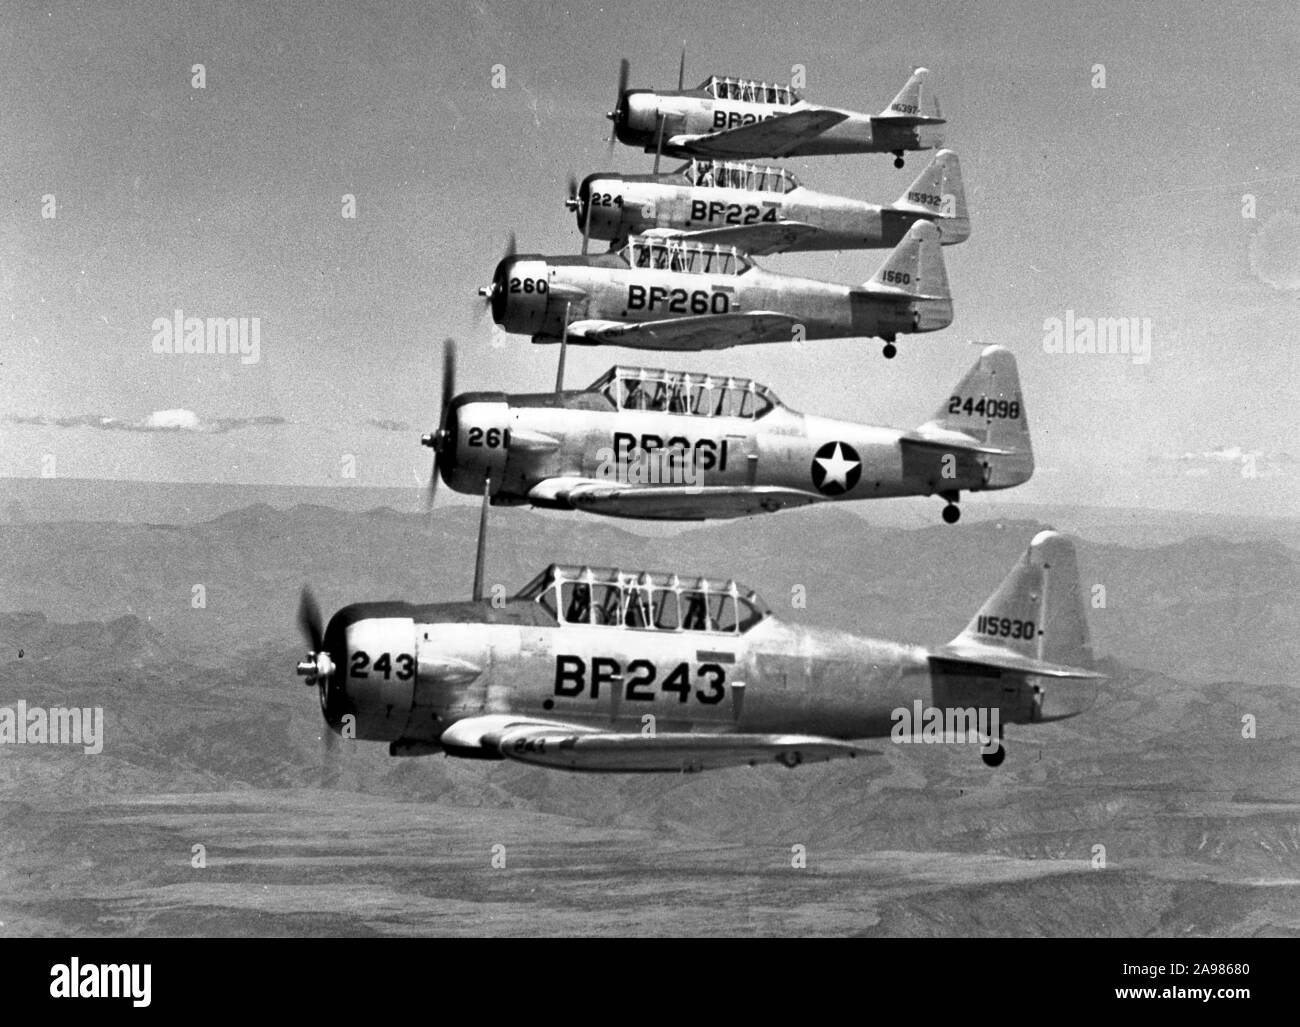 Les pilotes argentins bénévoles au service des forces alliés pendant la Seconde Guerre mondiale Banque D'Images